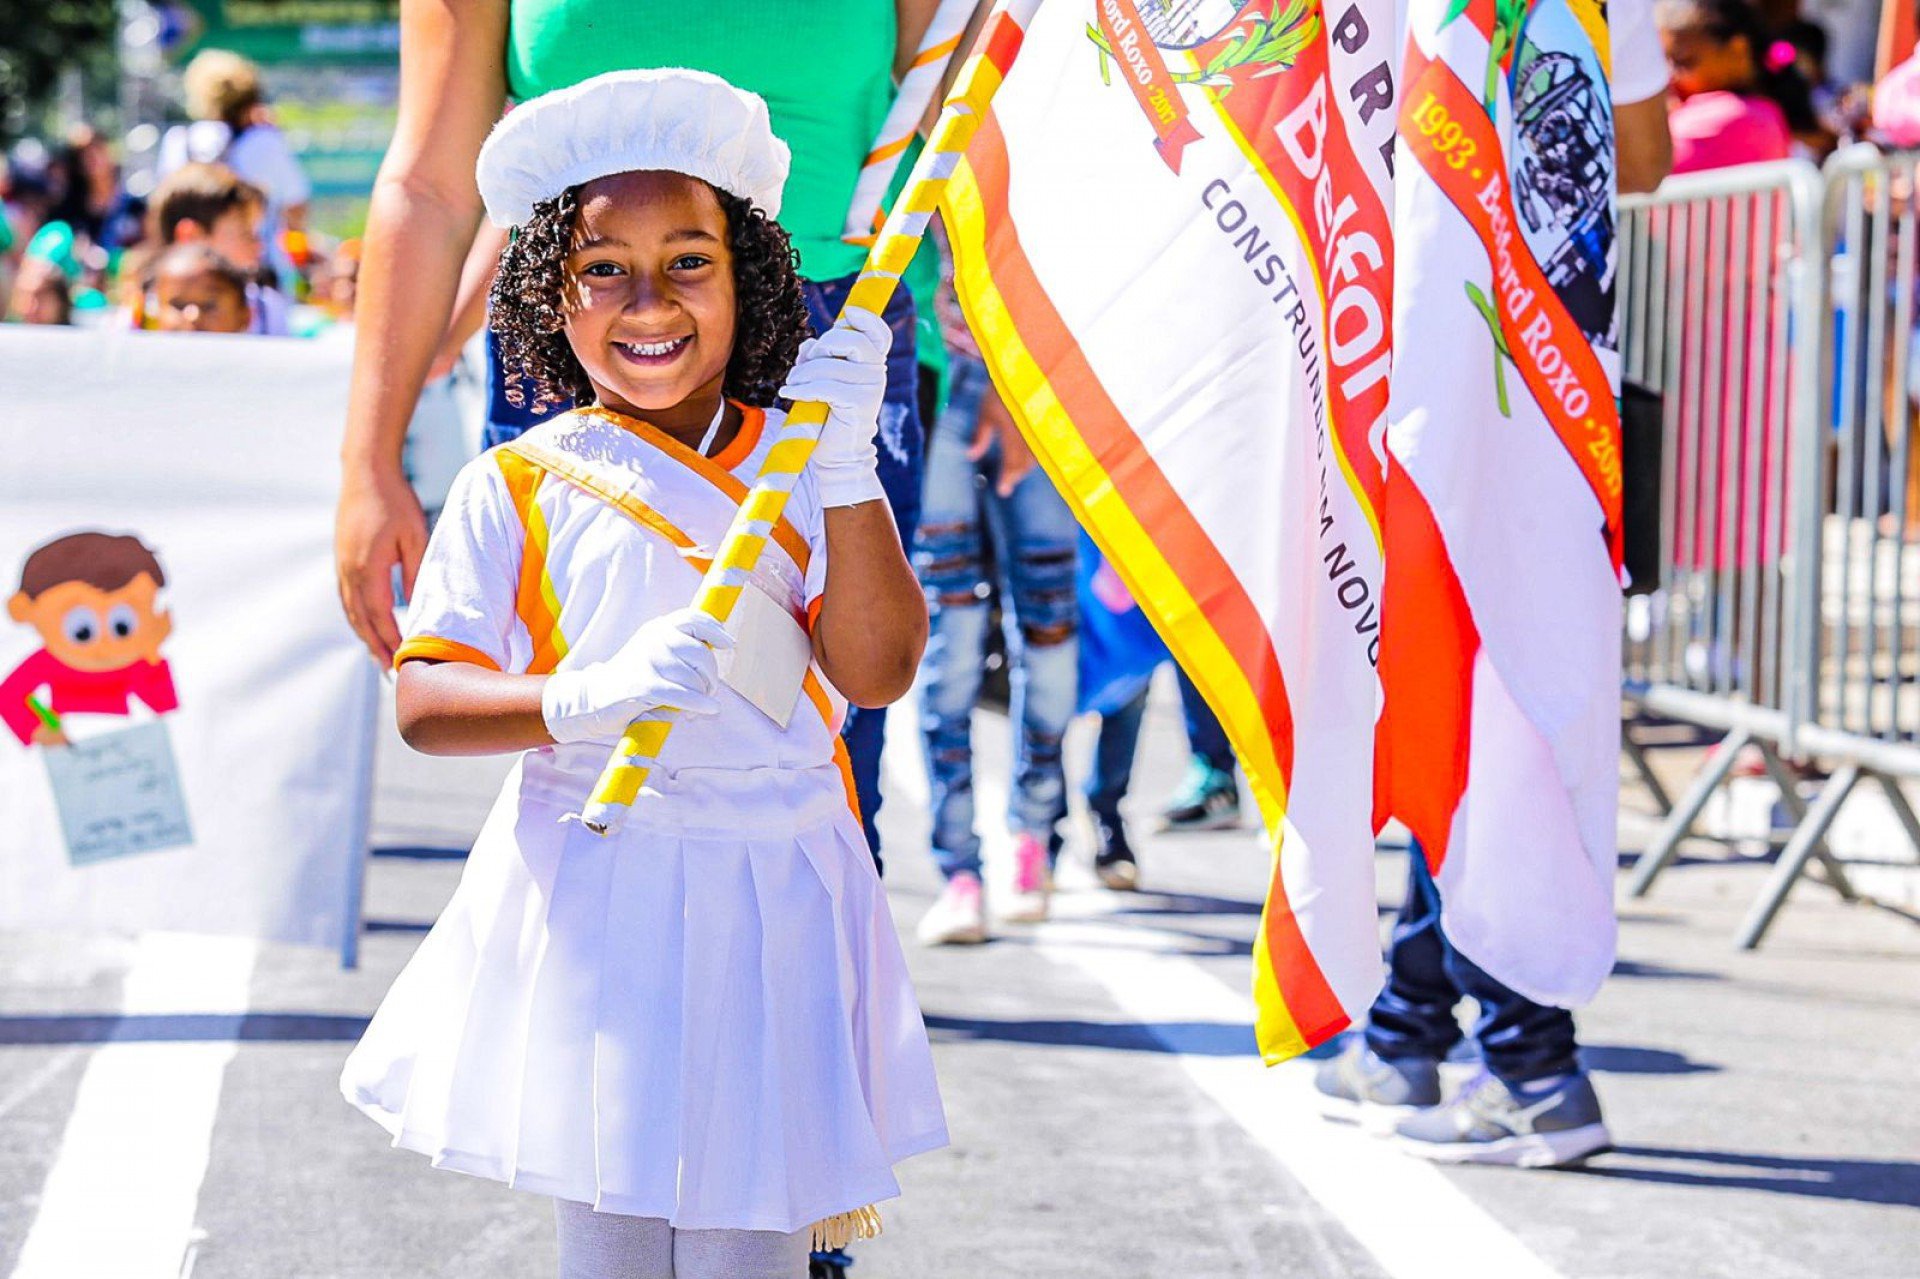 A graciosidade da pequena aluna deu mais um charme ao desfile no Parque São José - Rafael Barreto / PMBR